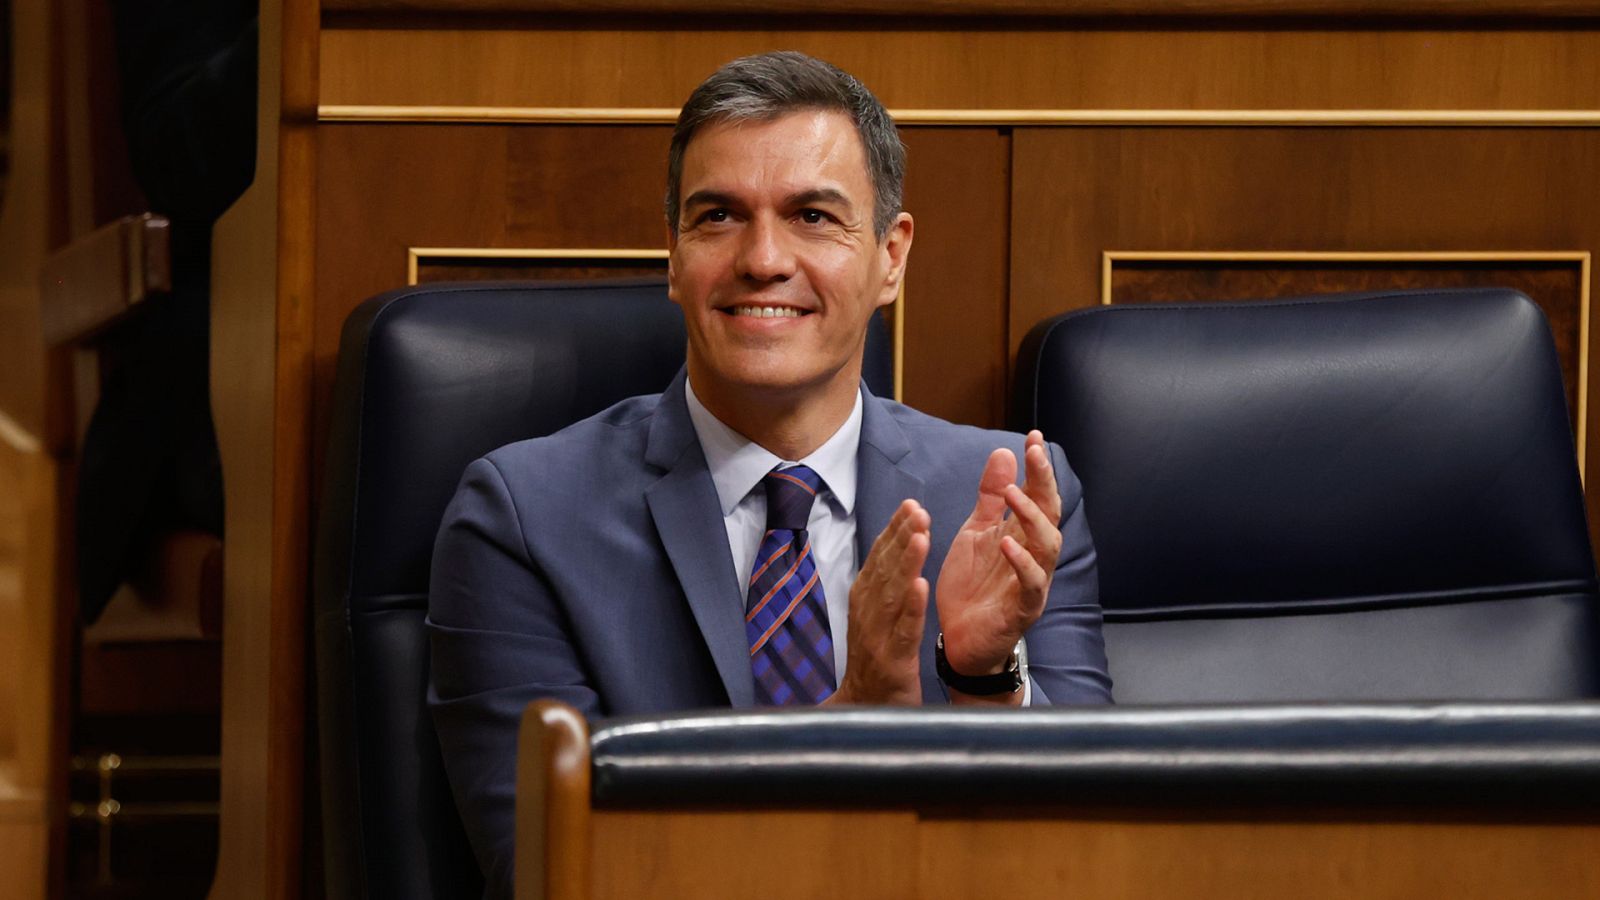  Pedro Sánchez en el Congreso de los Diputados